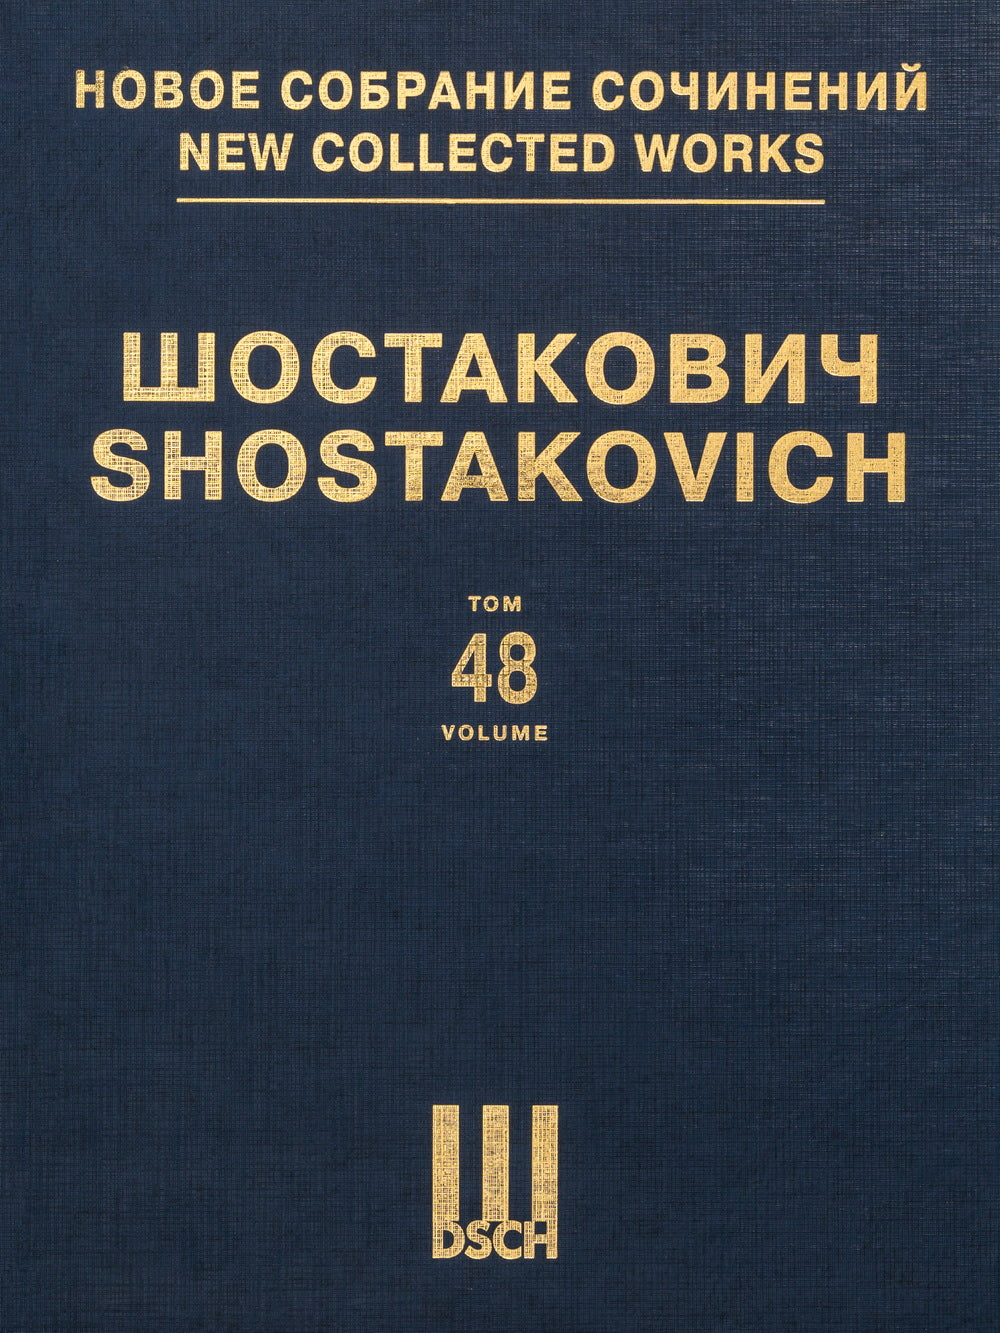 Shostakovich: Cello Concerto No 2, Op. 126